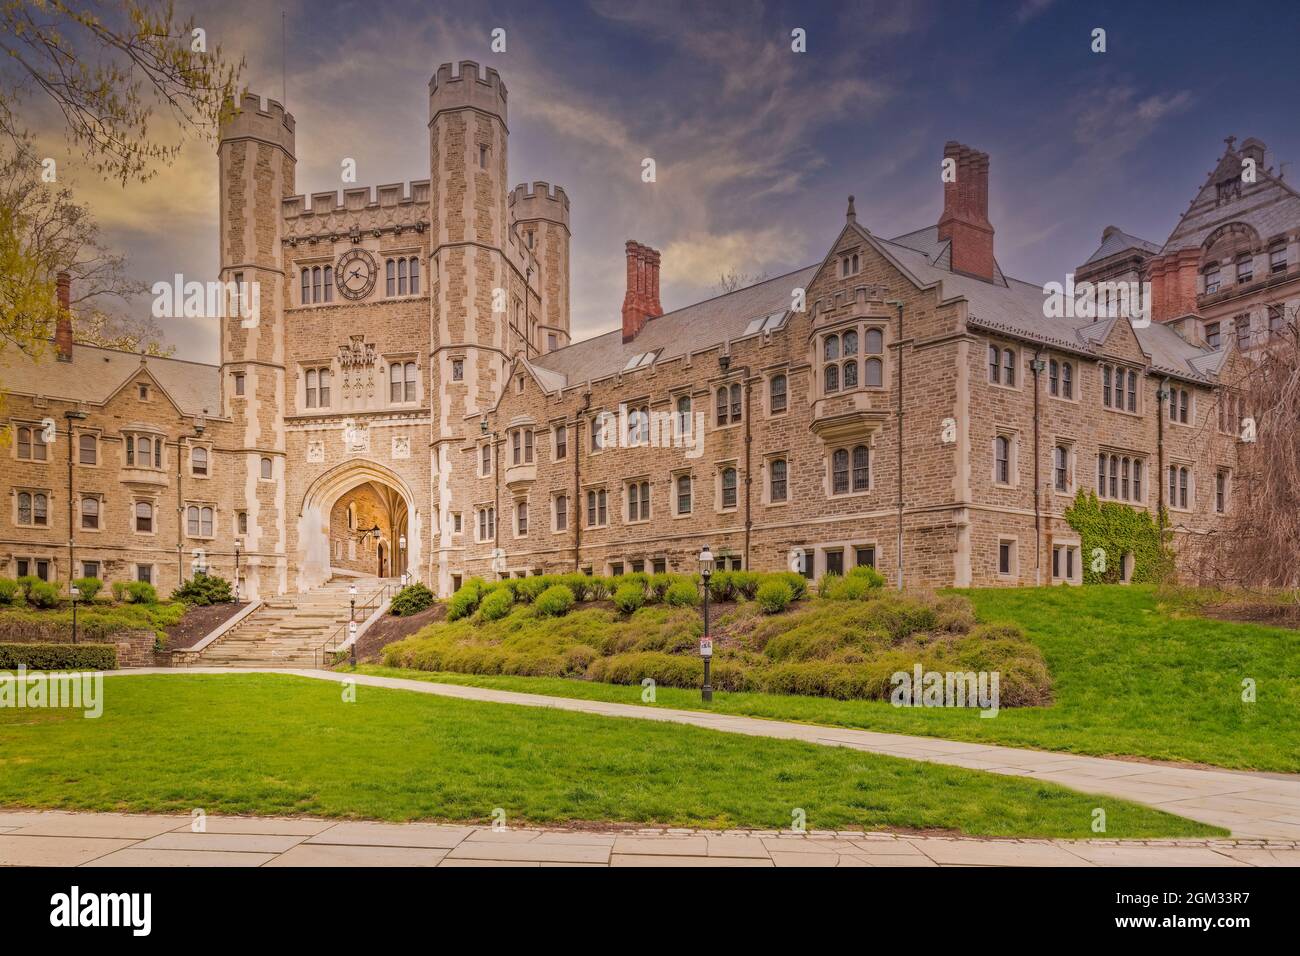 Princeton University Blair Hall - Vue sur l'architecture gothique collégiale de Blair Hall Clock Tower Arch. L'université de Princeton est une université privée Banque D'Images